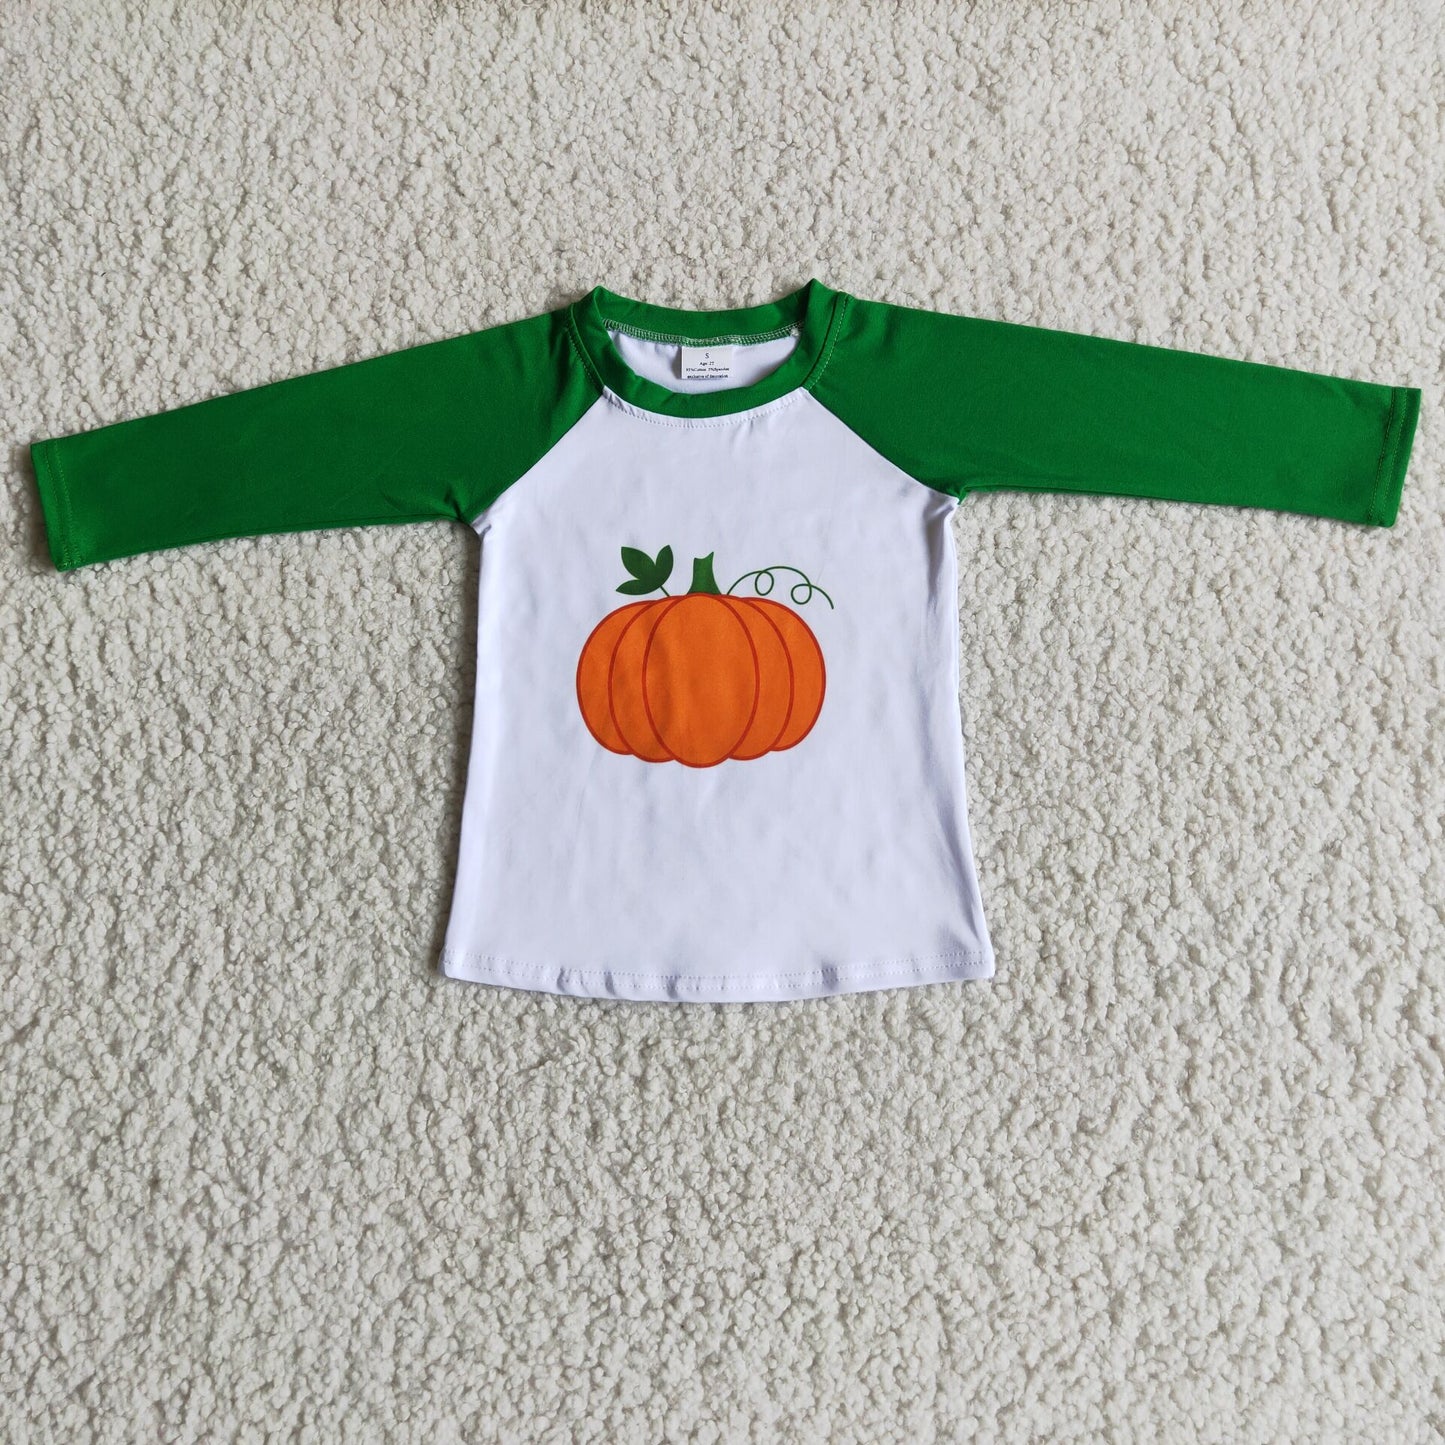 Green Sleeve Pumpkin Shirt